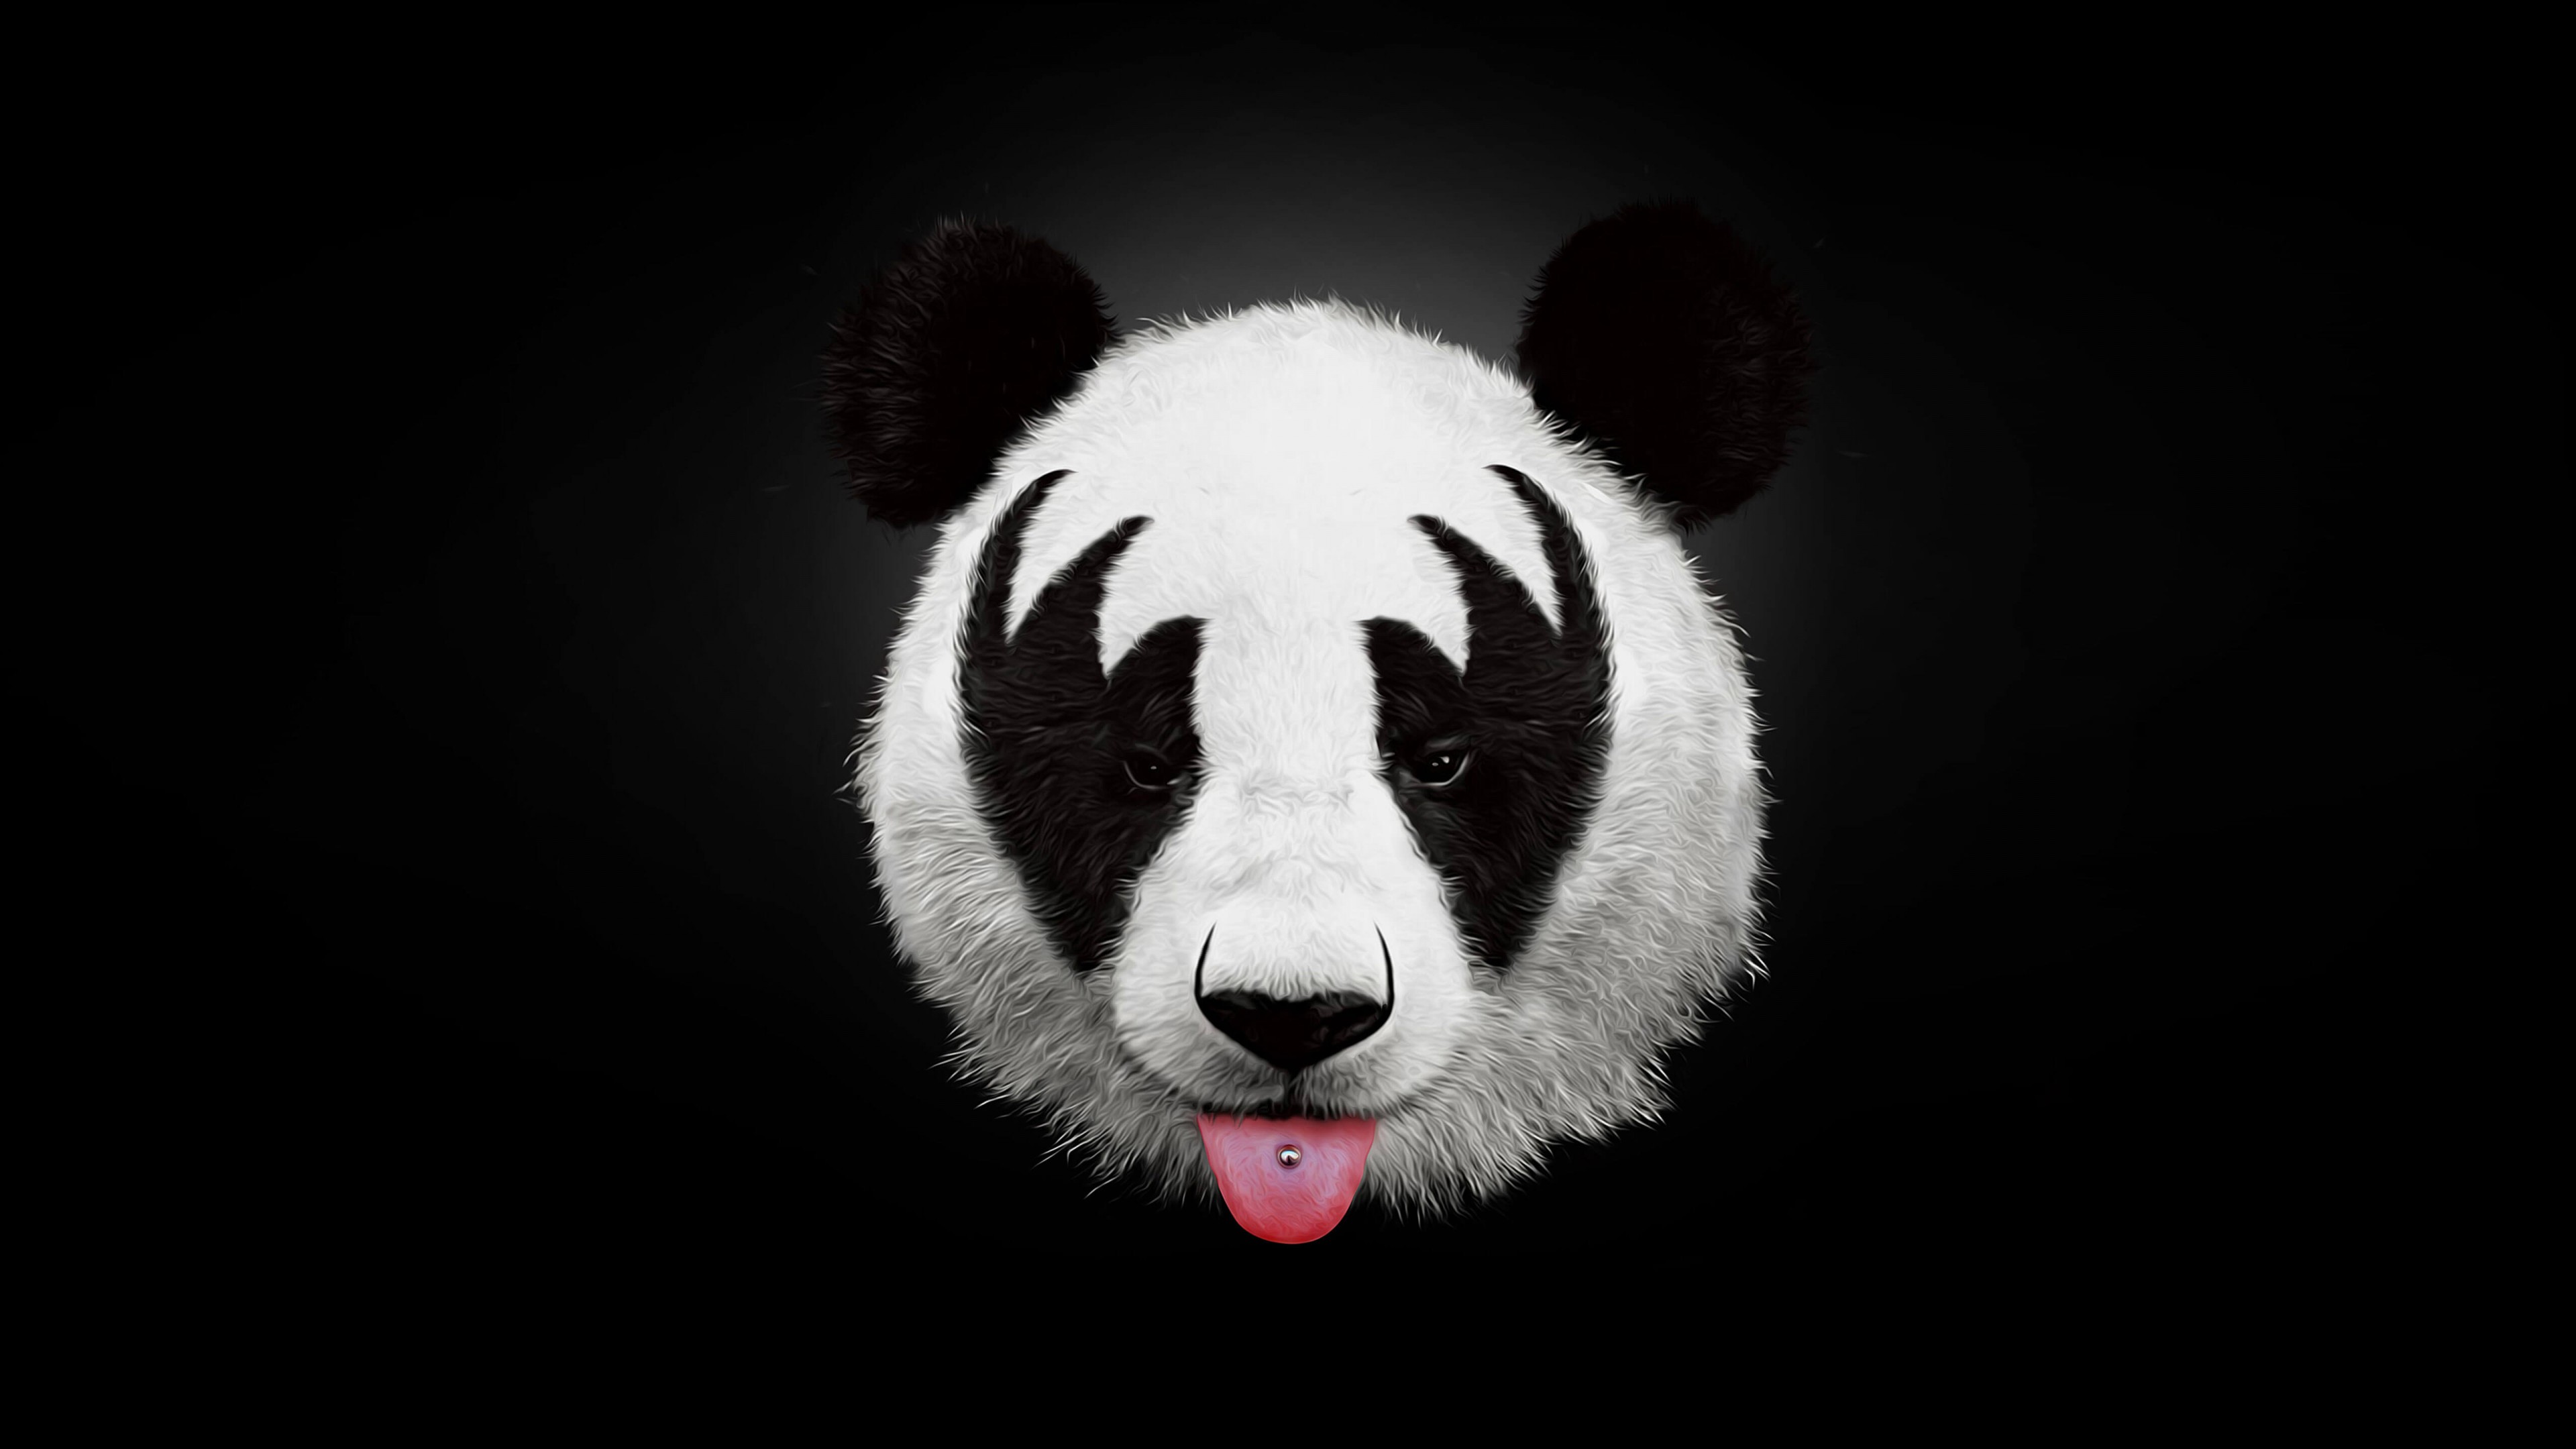 Cute Panda 4k wallpaper by Castropee  Download on ZEDGE  84f5